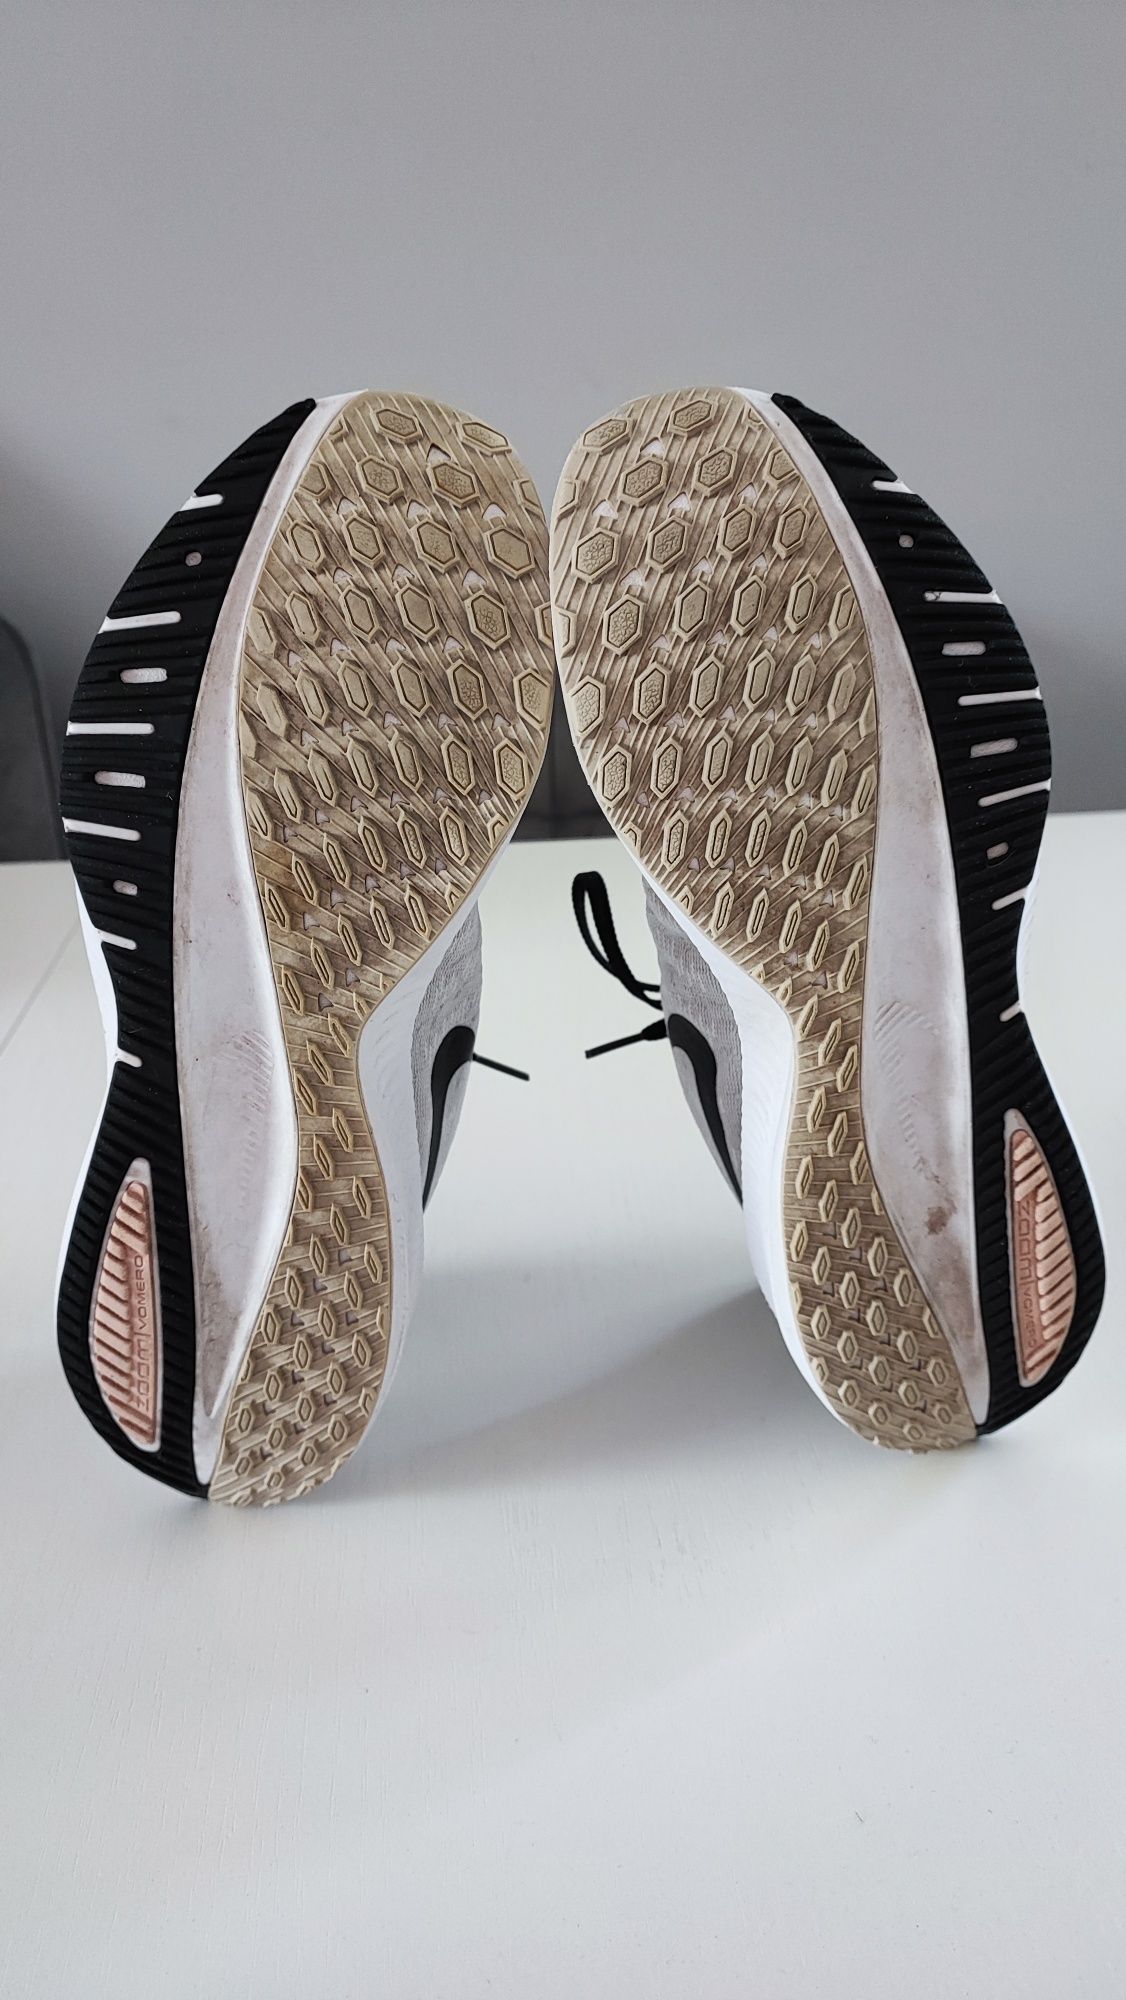 Buty sportowe do biegania damskie Nike Air rozmiar 41 wkładka 26,5 cm